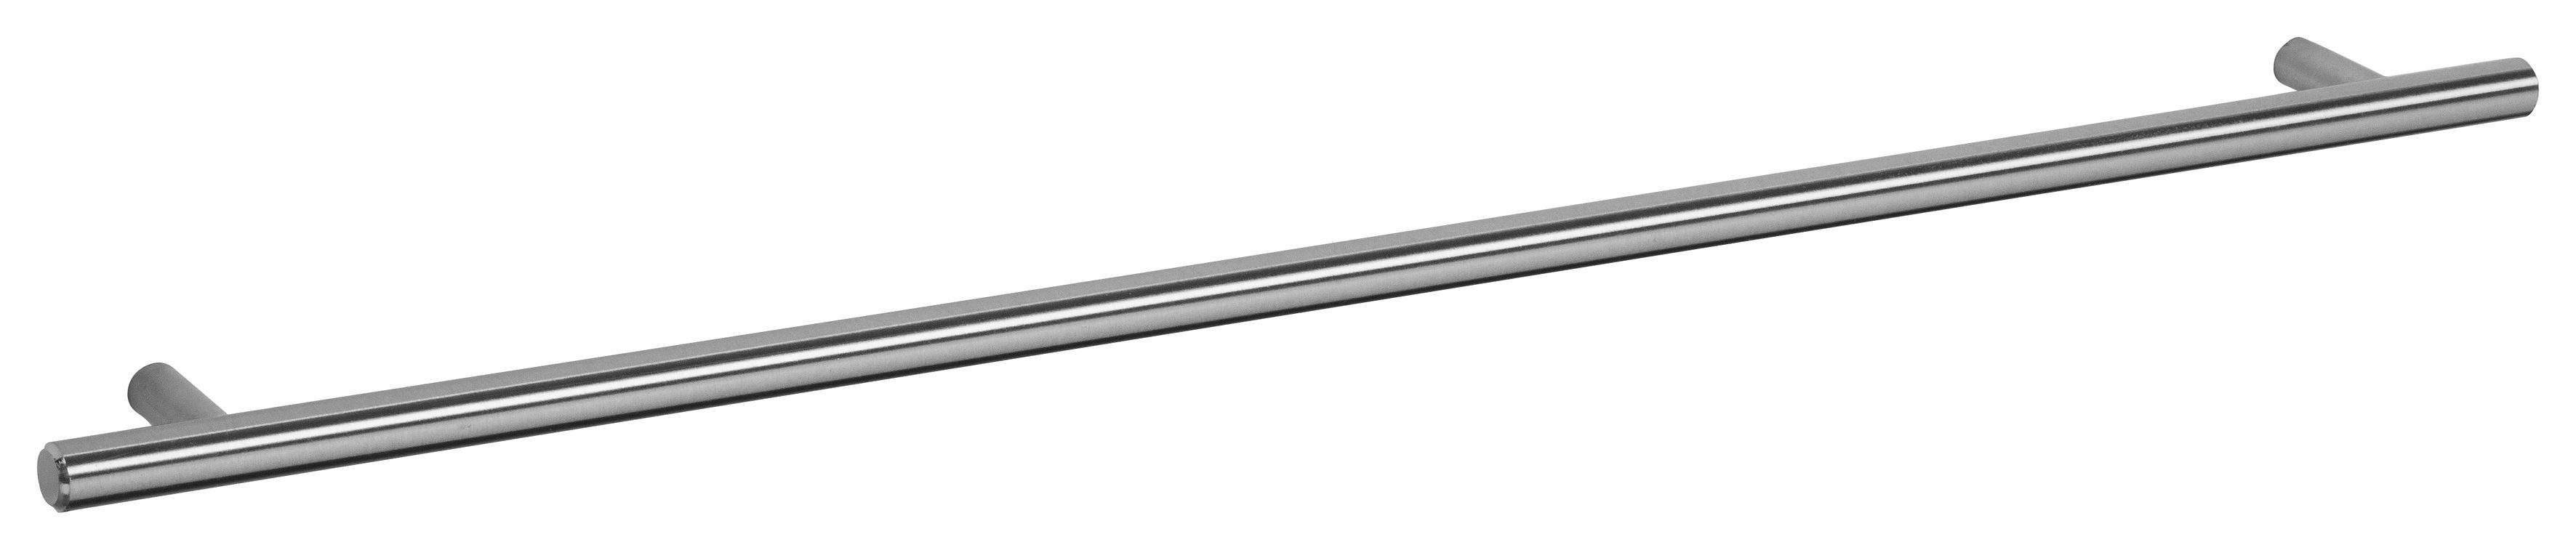 OPTIFIT Spülenschrank Bern Metallgriff Hochglanz/akaziefarben höhenverstellbaren 60 breit, mit mit weiß cm | akaziefarben Tür, 1 mit Füßen